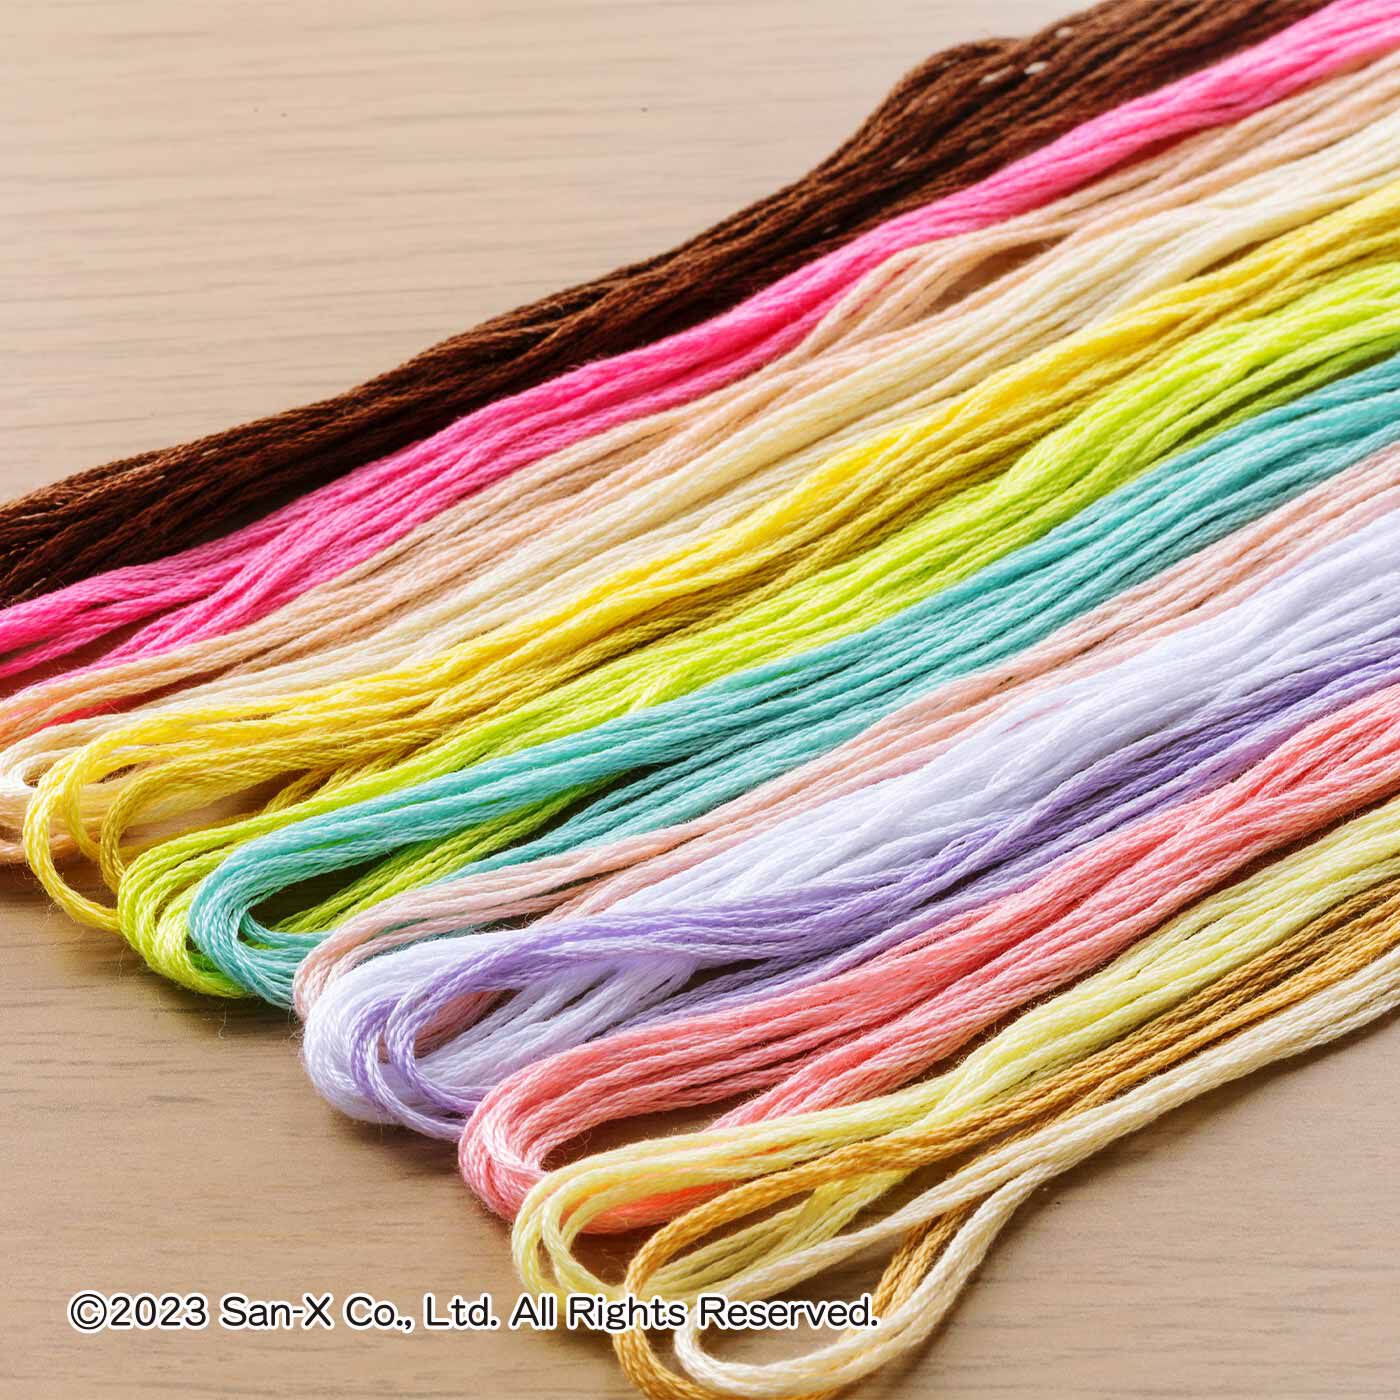 クチュリエ|クチュリエ×すみっコぐらし 癒やしのひととき 夢中でちくちくクロスステッチの会|すみっコたちの色合いを繊細に表現するために、毎月12〜18色の刺しゅう糸がセットで届きます。